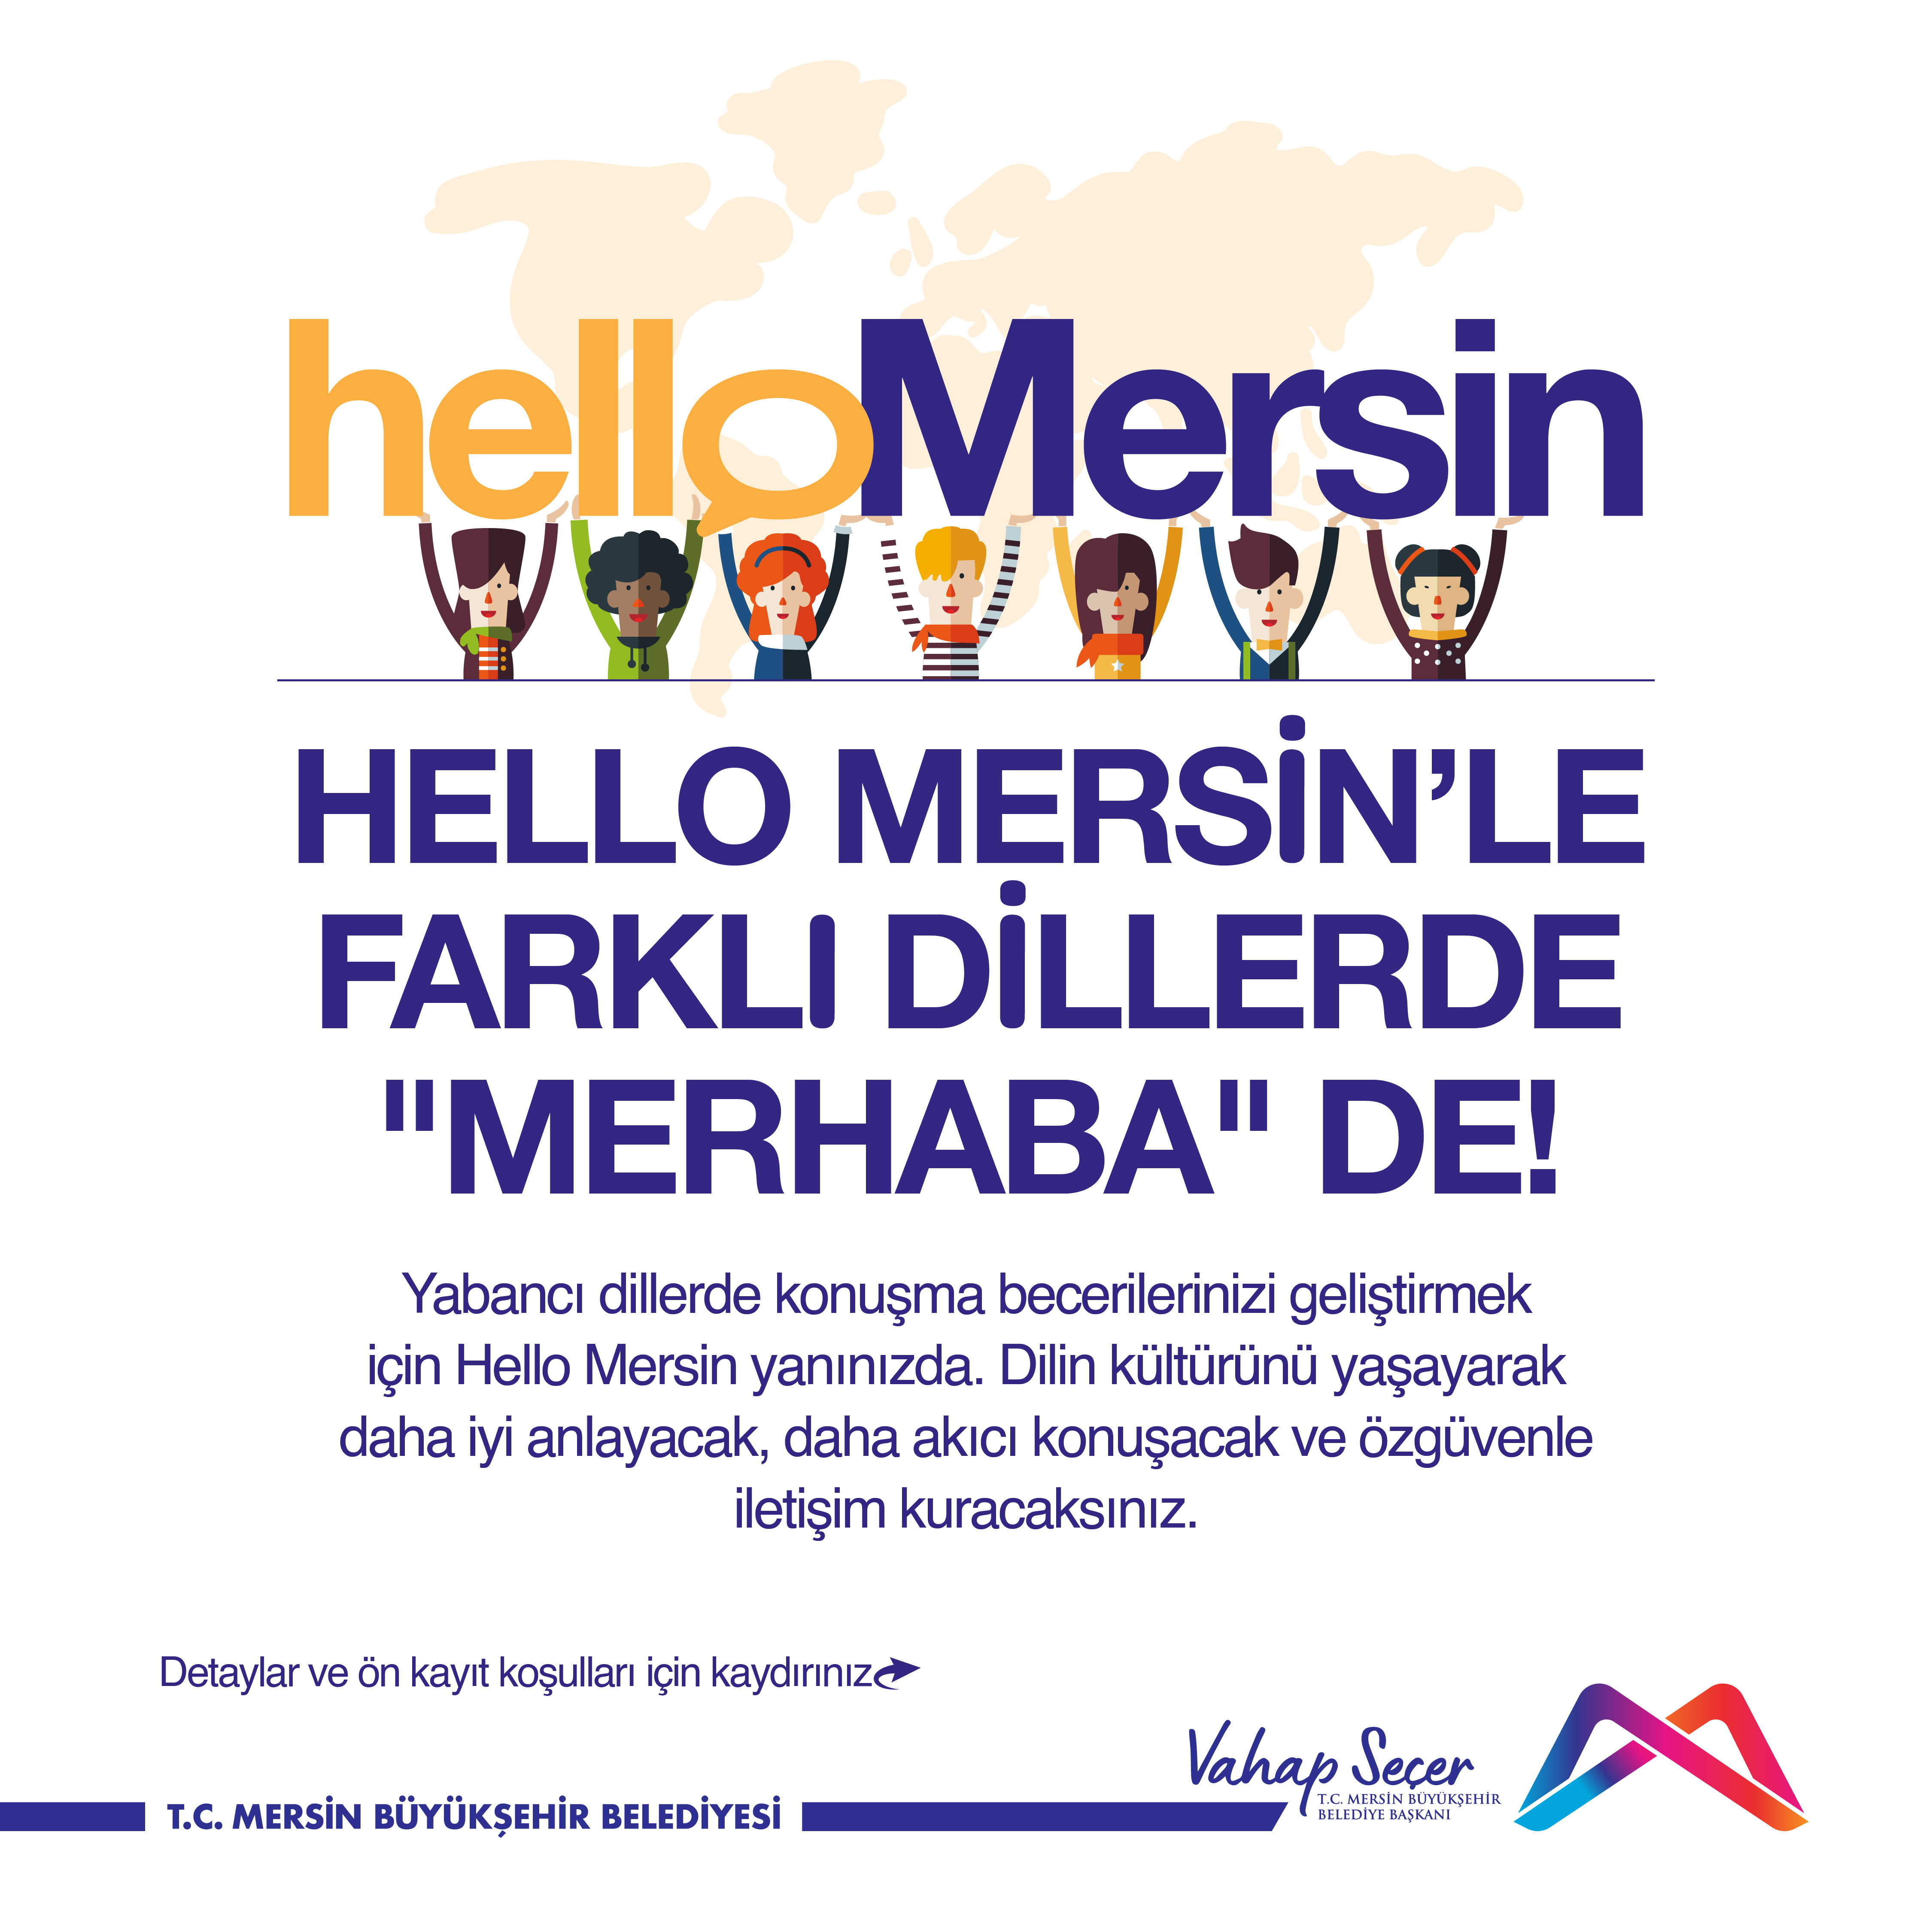 Hello Mersin'le farklı dillerde 